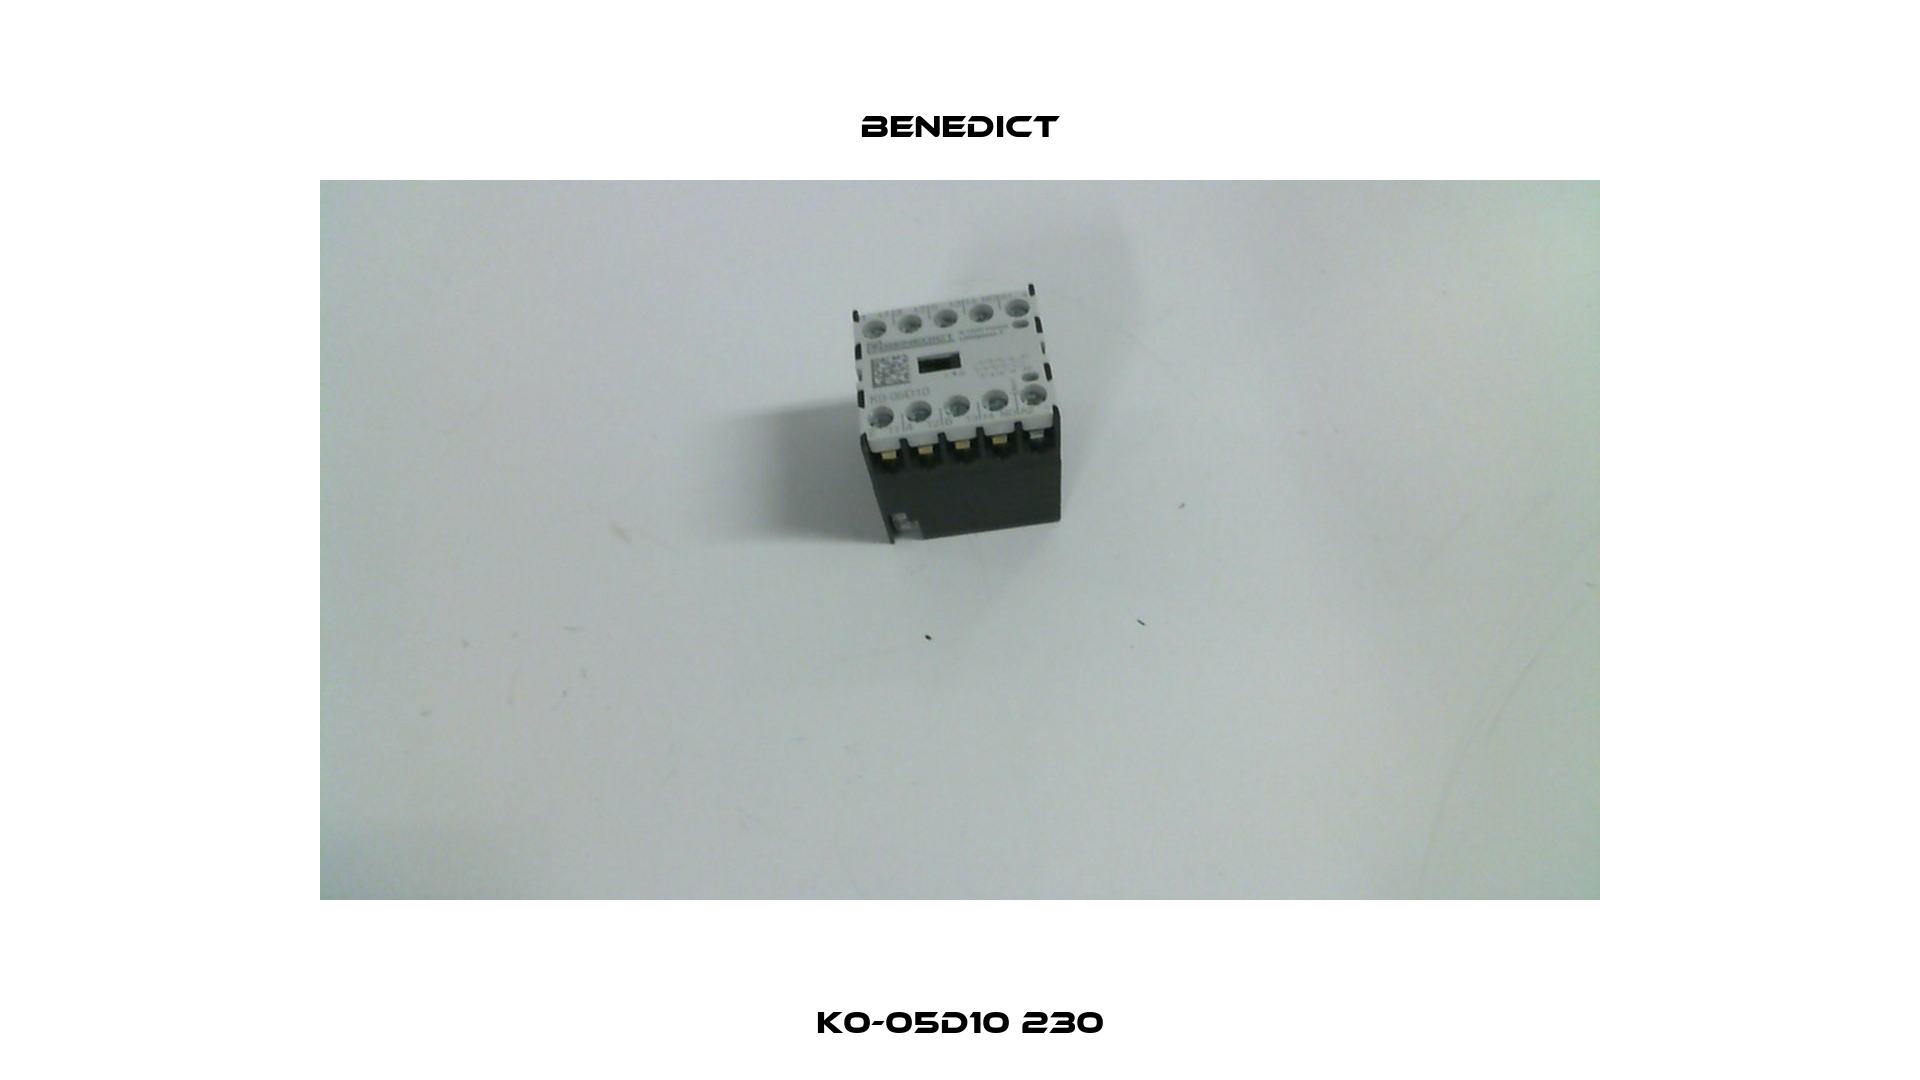 K0-05D10 230 Benedict